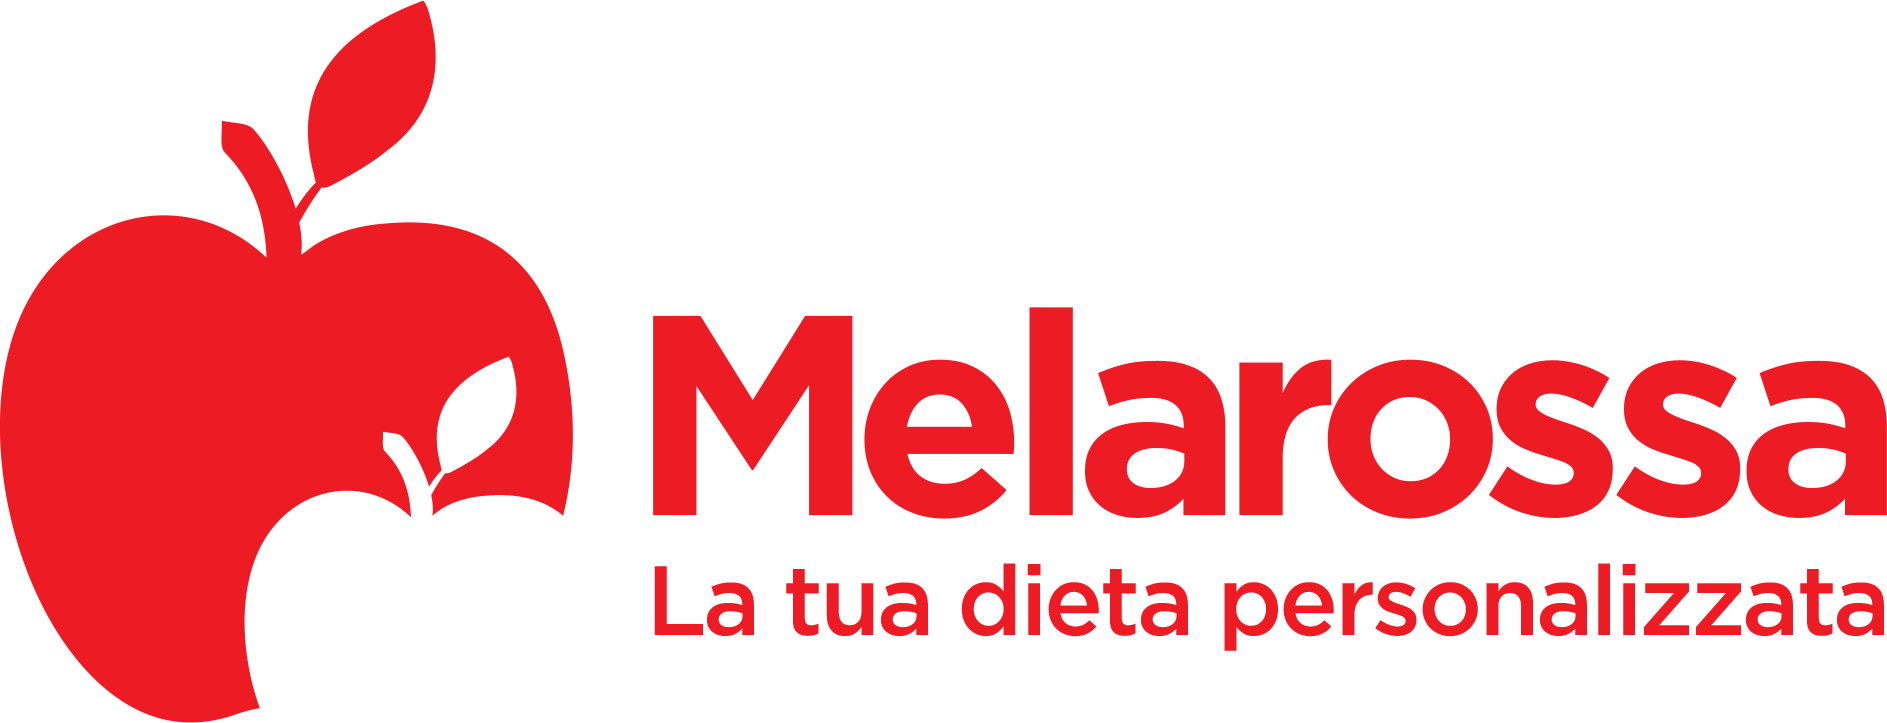 Melarossa